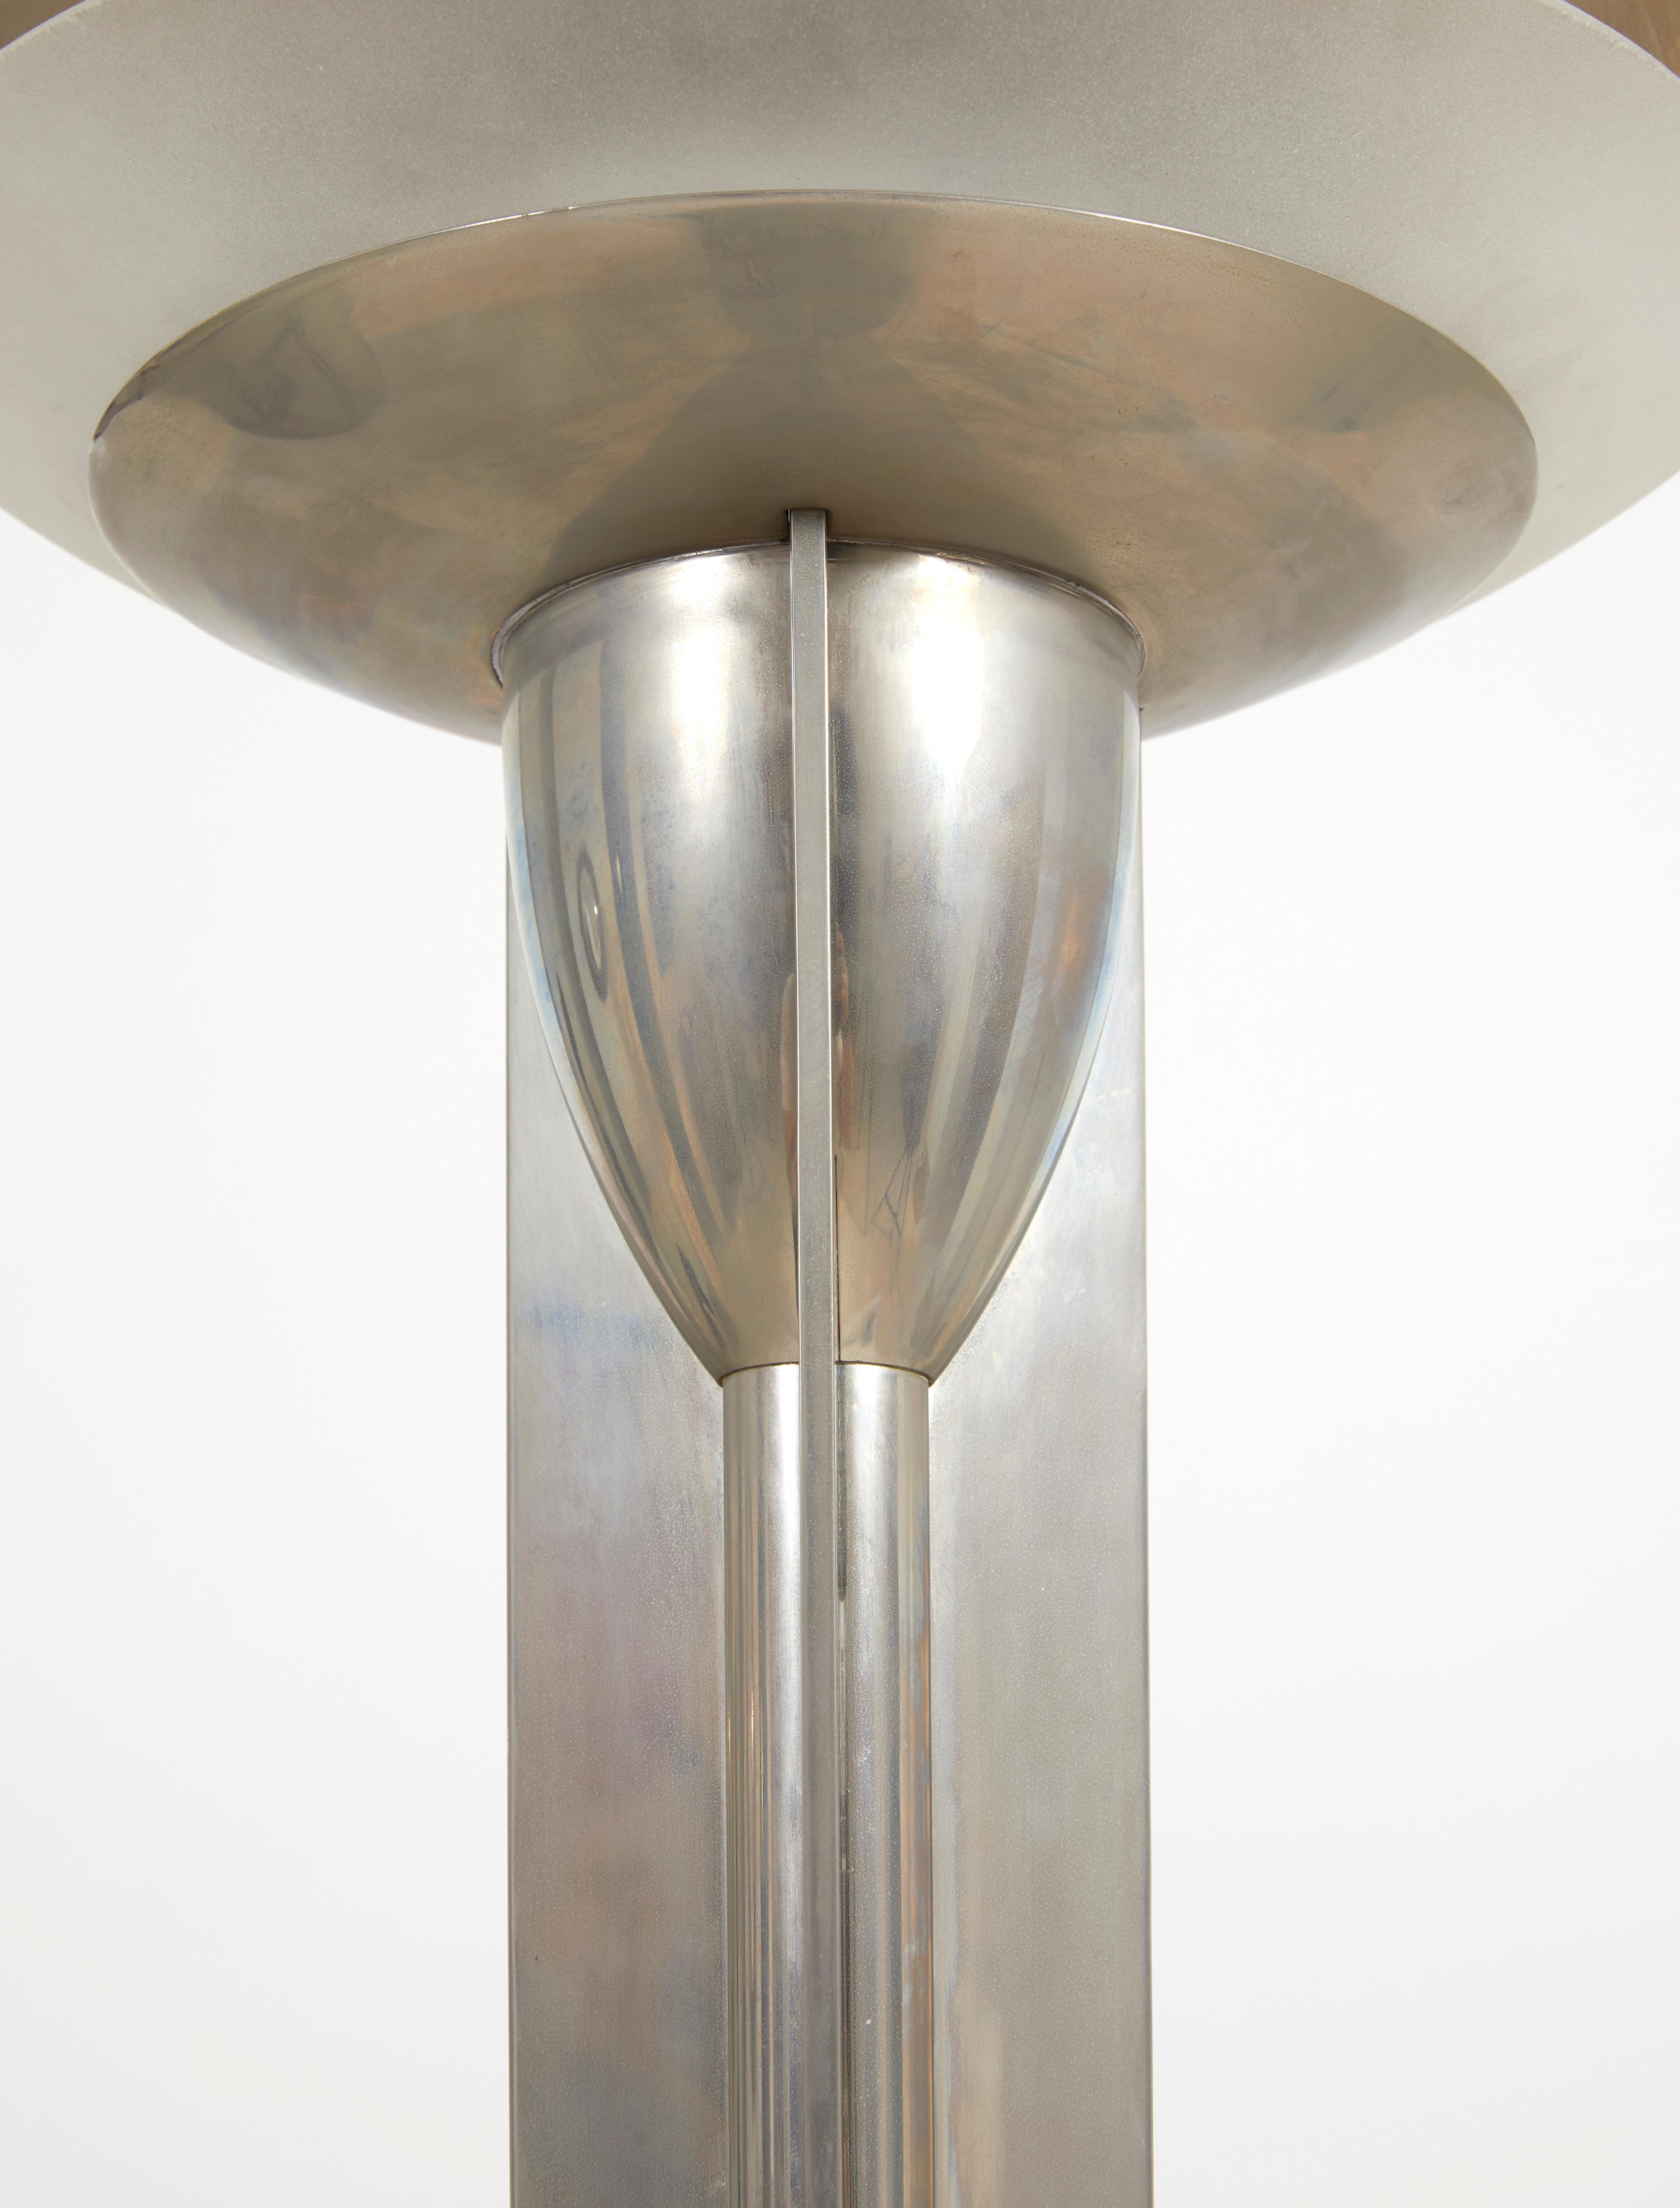 Lampadaire en métal nickelé argenté, trois vasques en verre opalin blanc, base circulaire.

Modèle présenté en 1932 au 21e Salon des artistes décorateurs et acheté par la ville de Paris pour l'Exposition universelle de 1937.